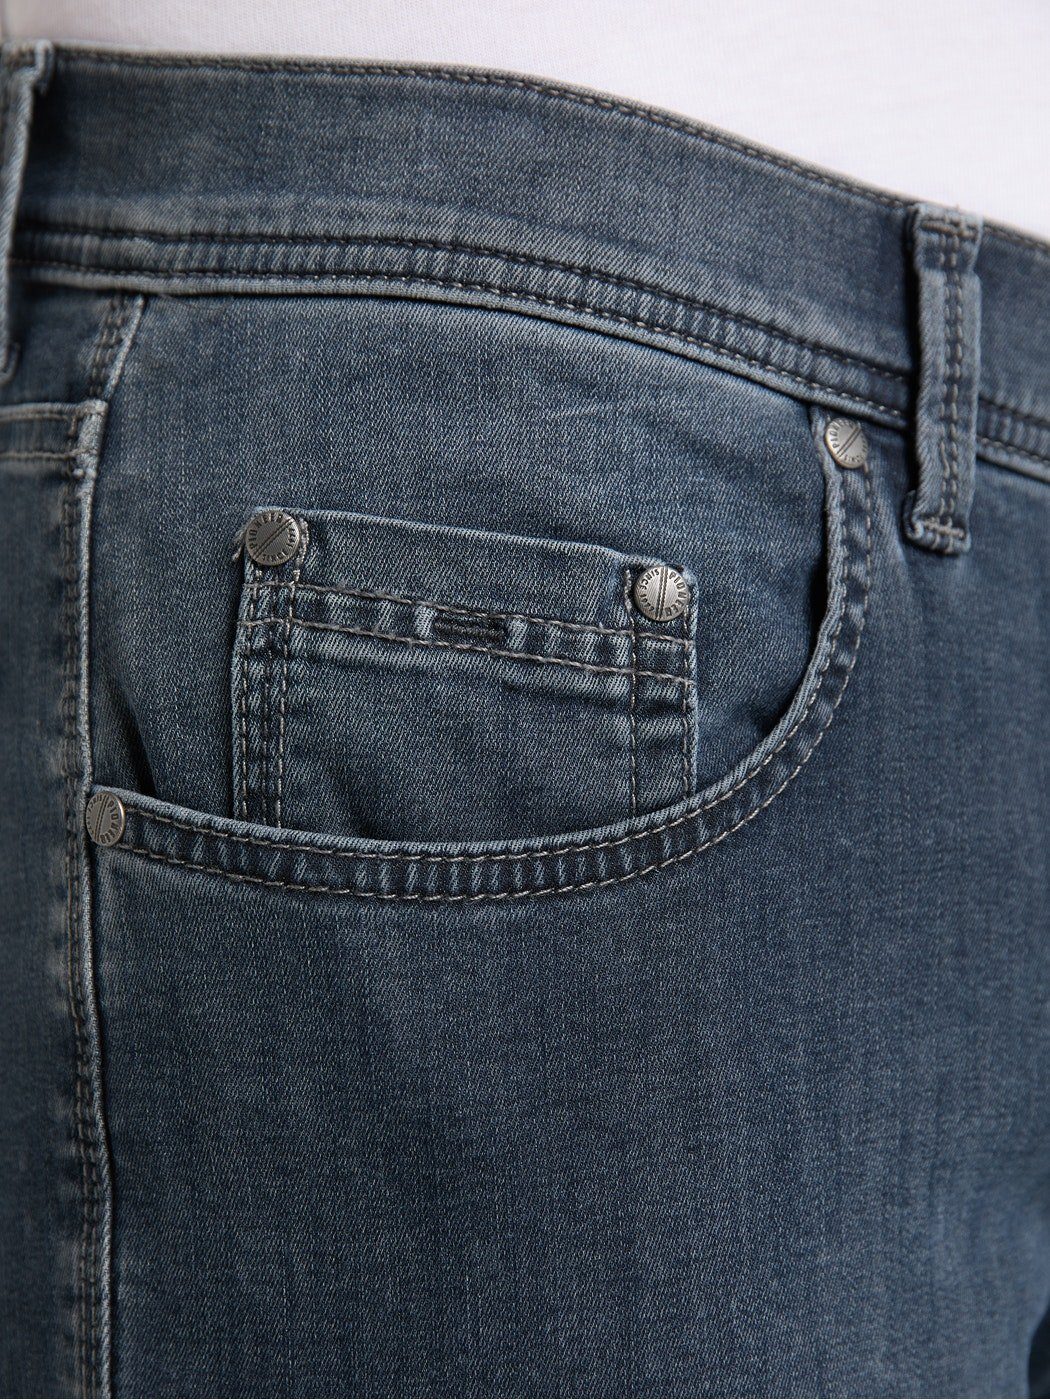 Herren Jeans Pioneer Authentic Jeans 5-Pocket-Jeans PIONEER RANDO MEGAFLEX blue dark used 1680 9966.14